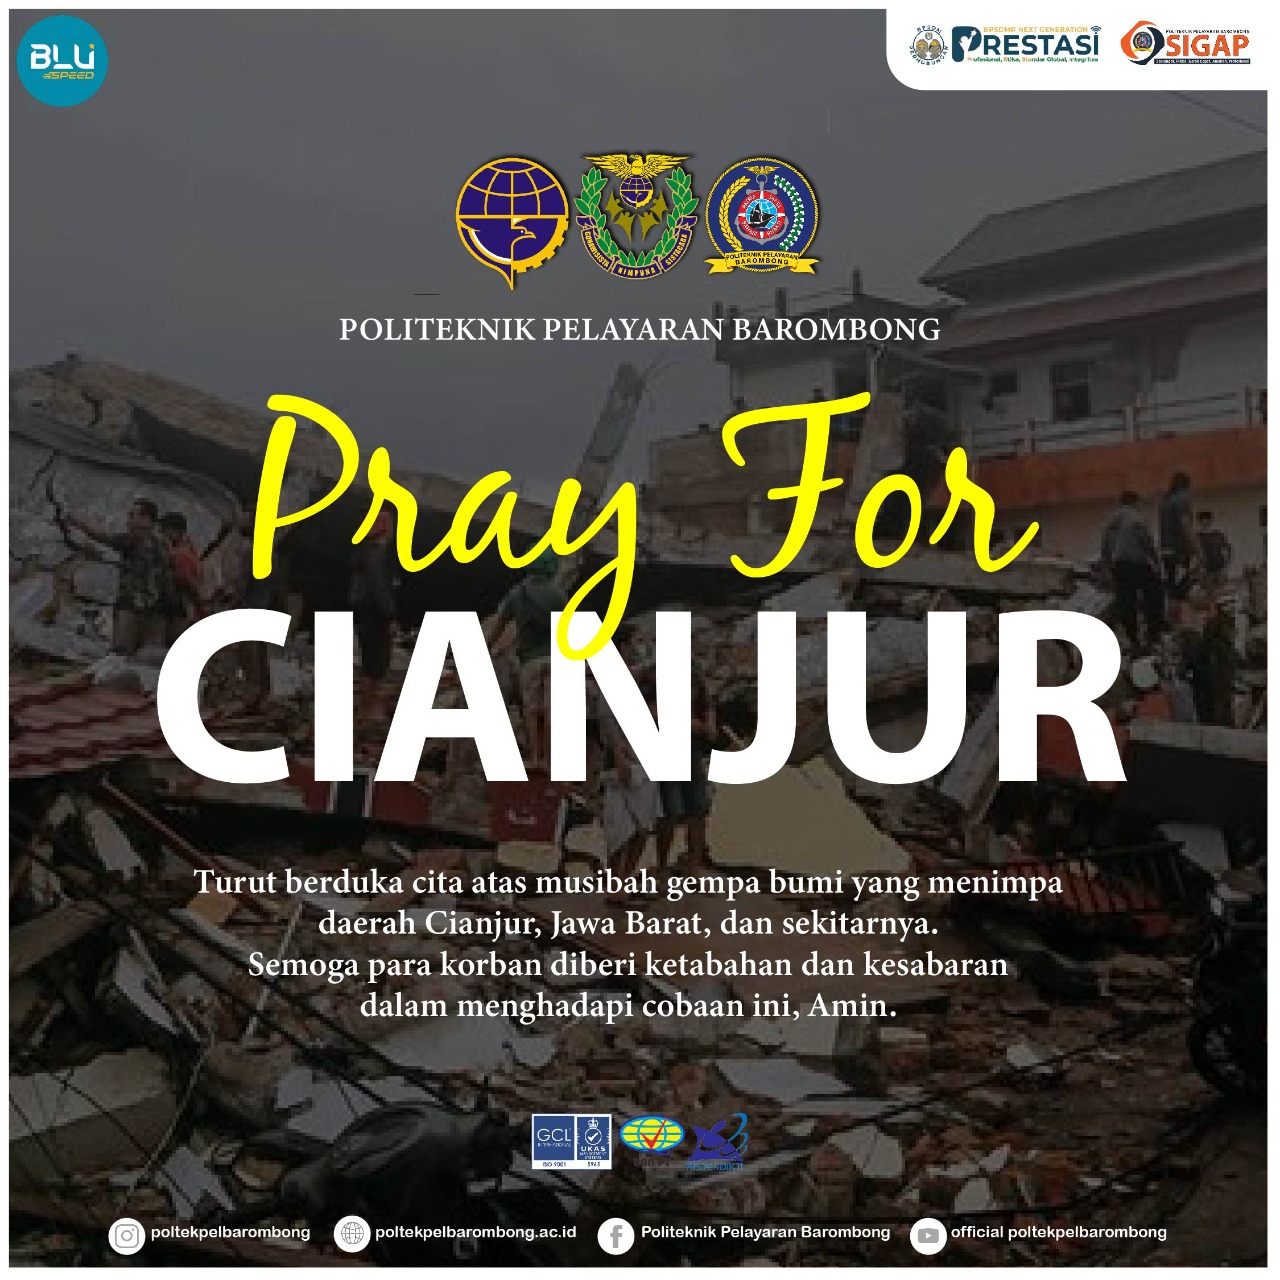 You are currently viewing Turut Berduka Cita atas musibah gempa bumi yang menimpa daerah Cianjur dan sekitarnya. Semoga para korban diberi ketabahan dan kesabaran dalam menghadapi cobaan ini, Amin.